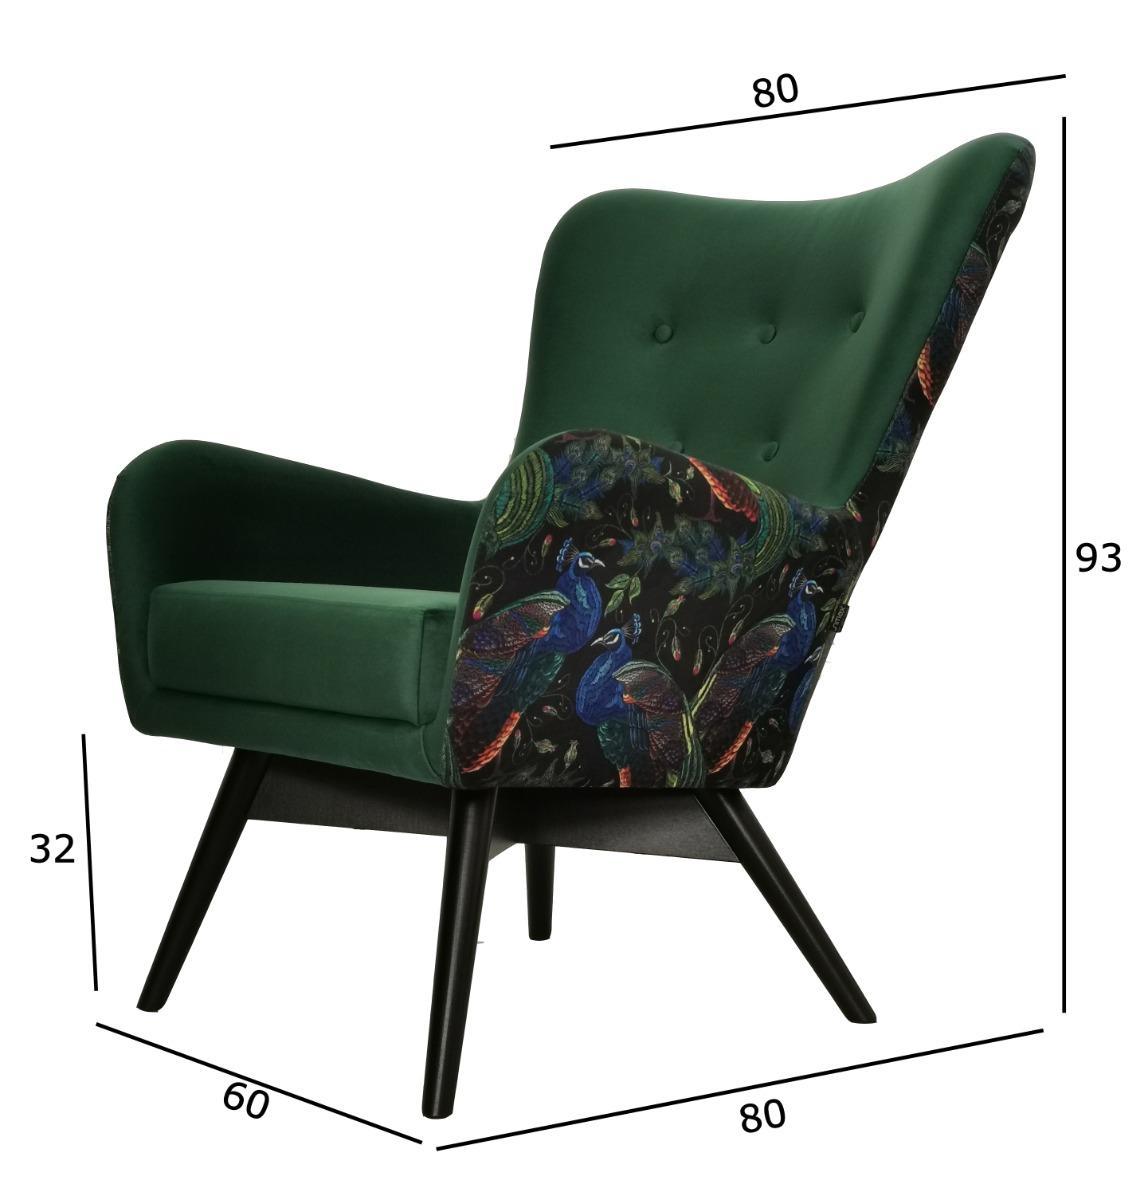 Fotel skandynawski GRANDE 80x93x80 cm zielony we wzory pawie do salonu nr. 5